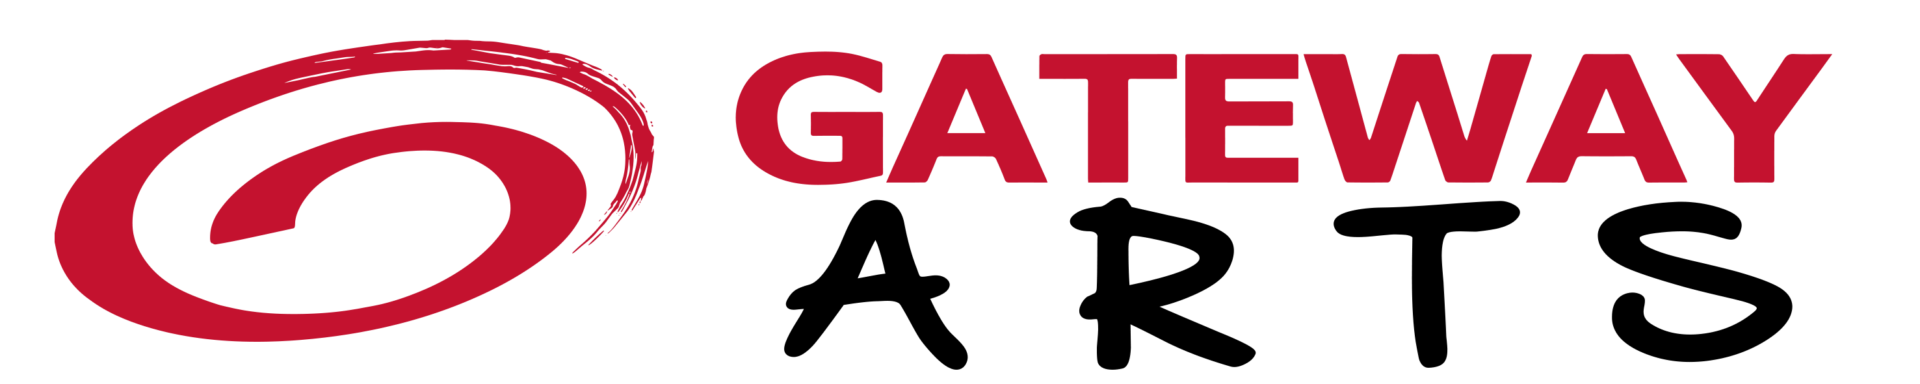 Gateway Arts